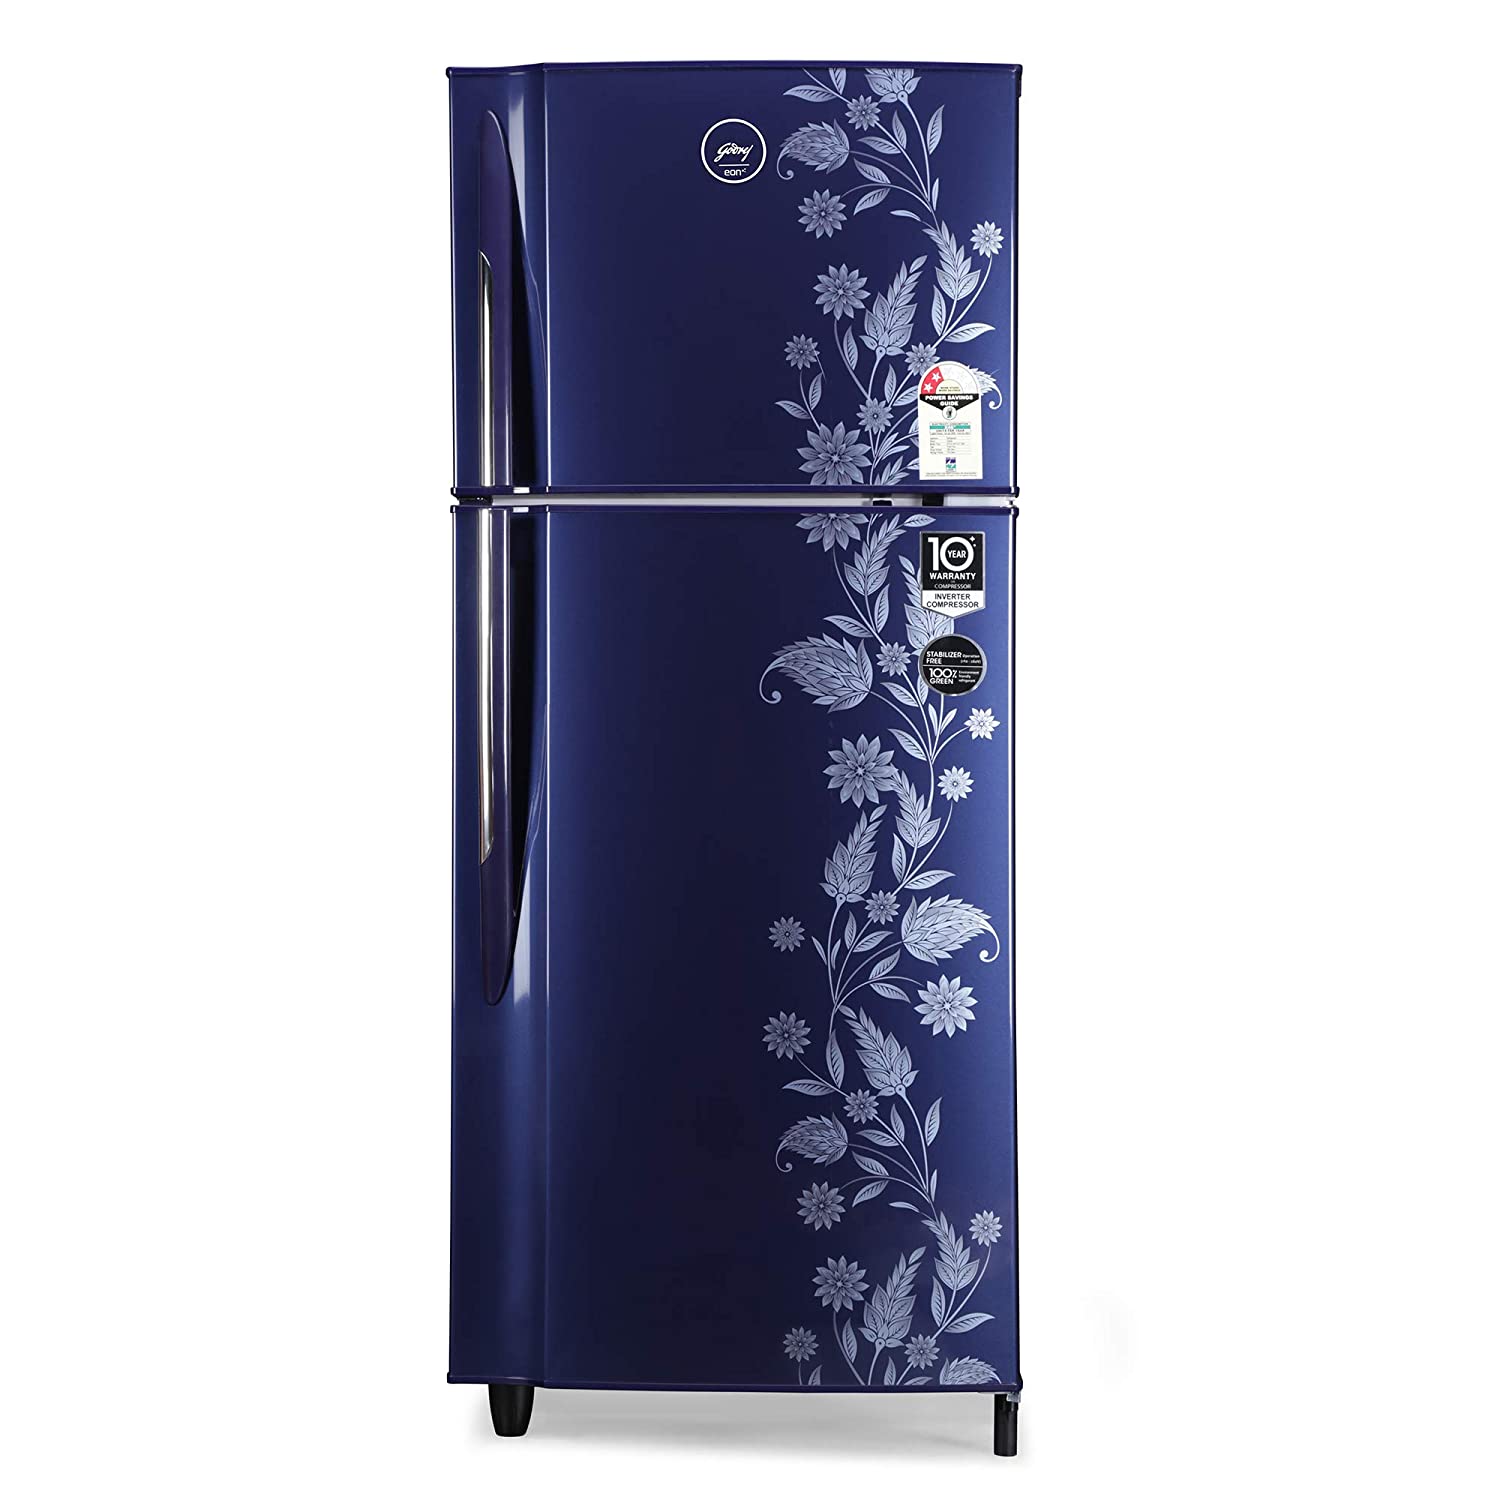 Godrej 236 L 2 Star Inverter Frost Free Double Door Refrigerator